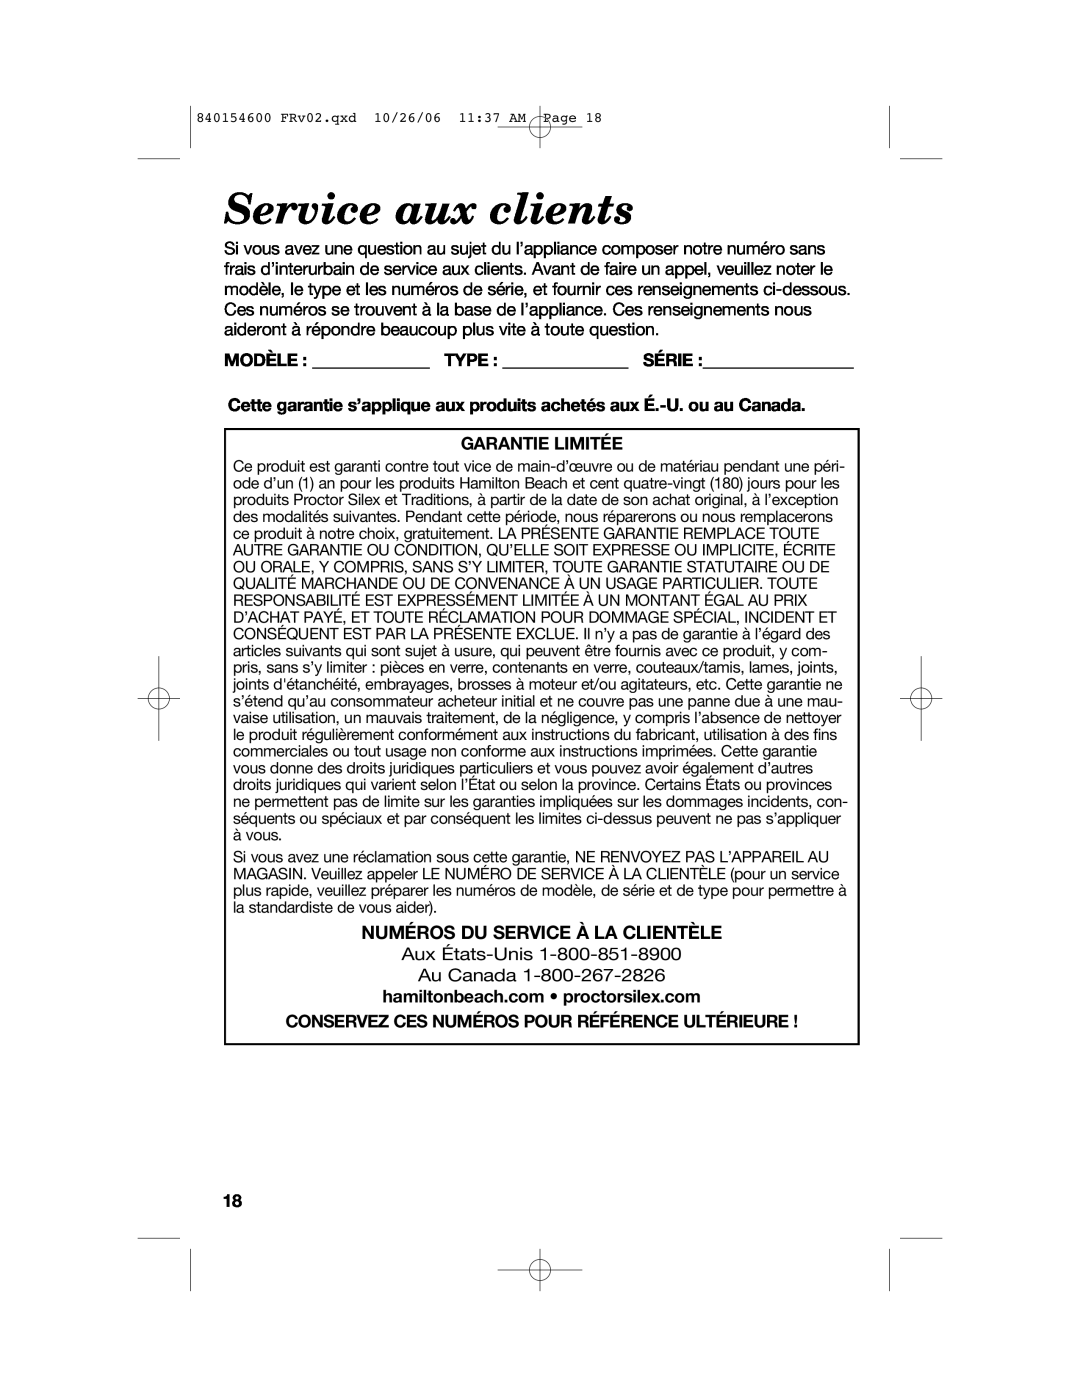 Hamilton Beach 840154600 manual Service aux clients, Modèle Type Série, Garantie Limitée, Numéros Du Service À La Clientèle 